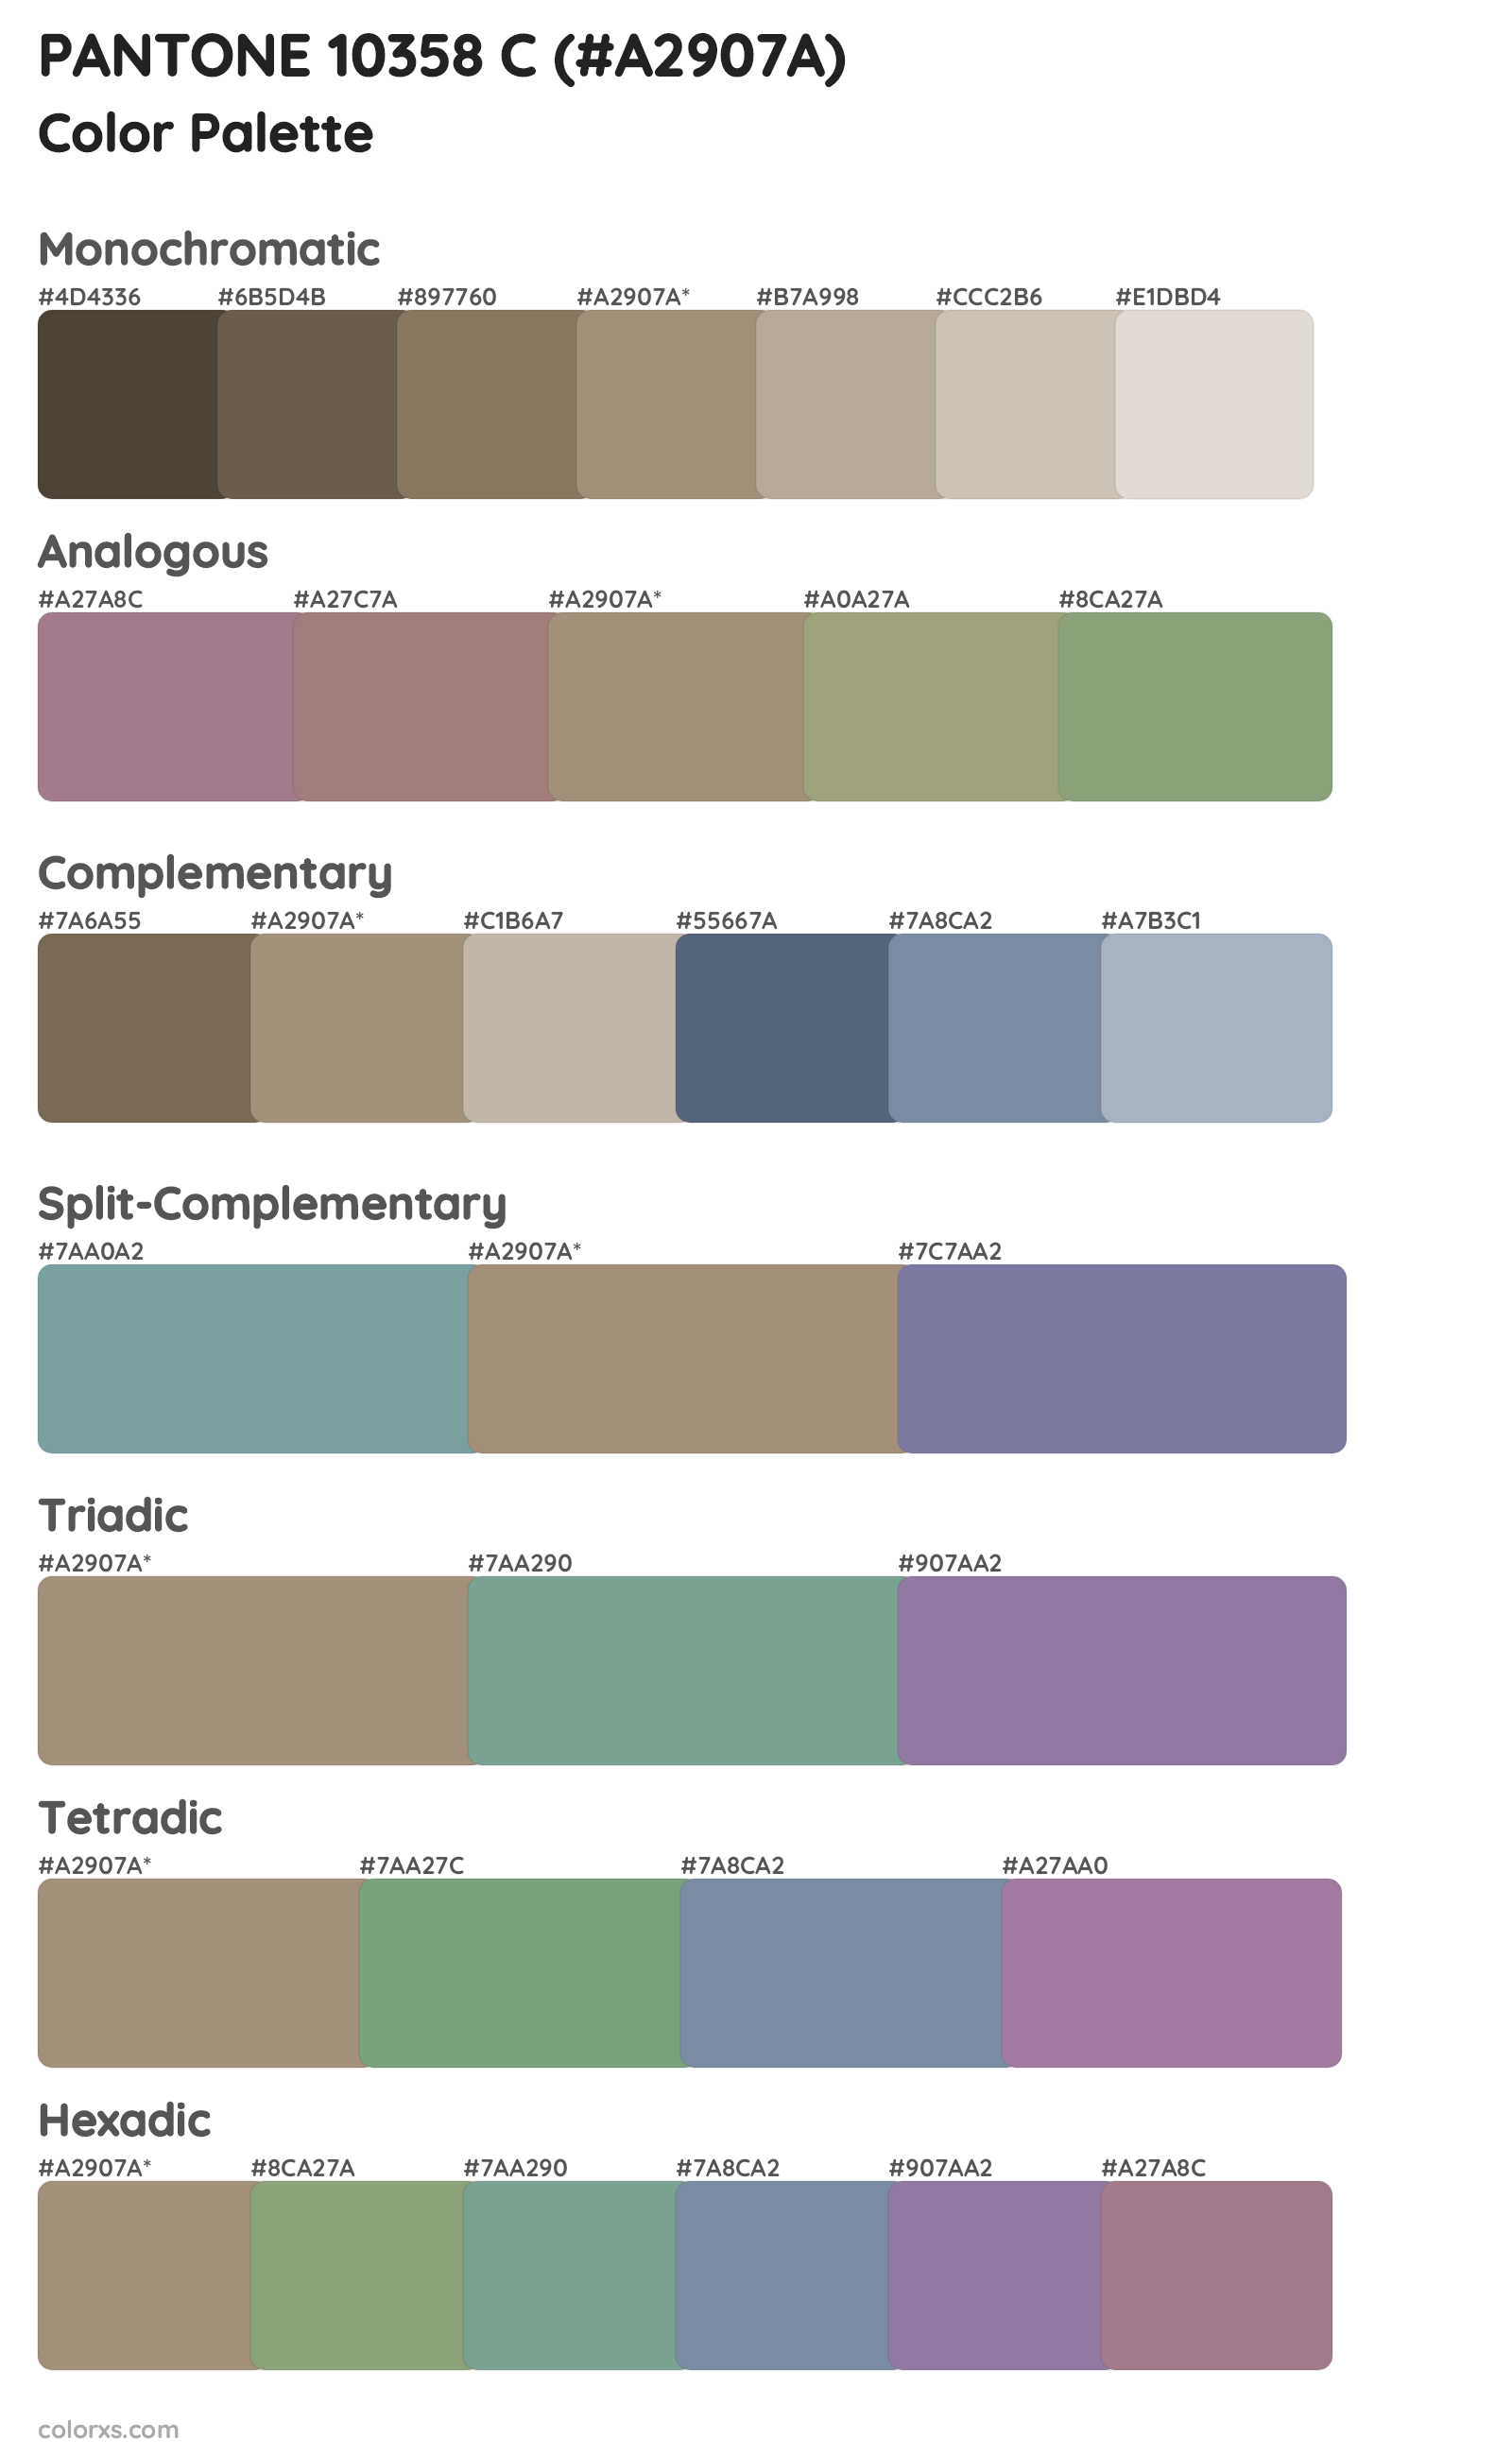 PANTONE 10358 C Color Scheme Palettes